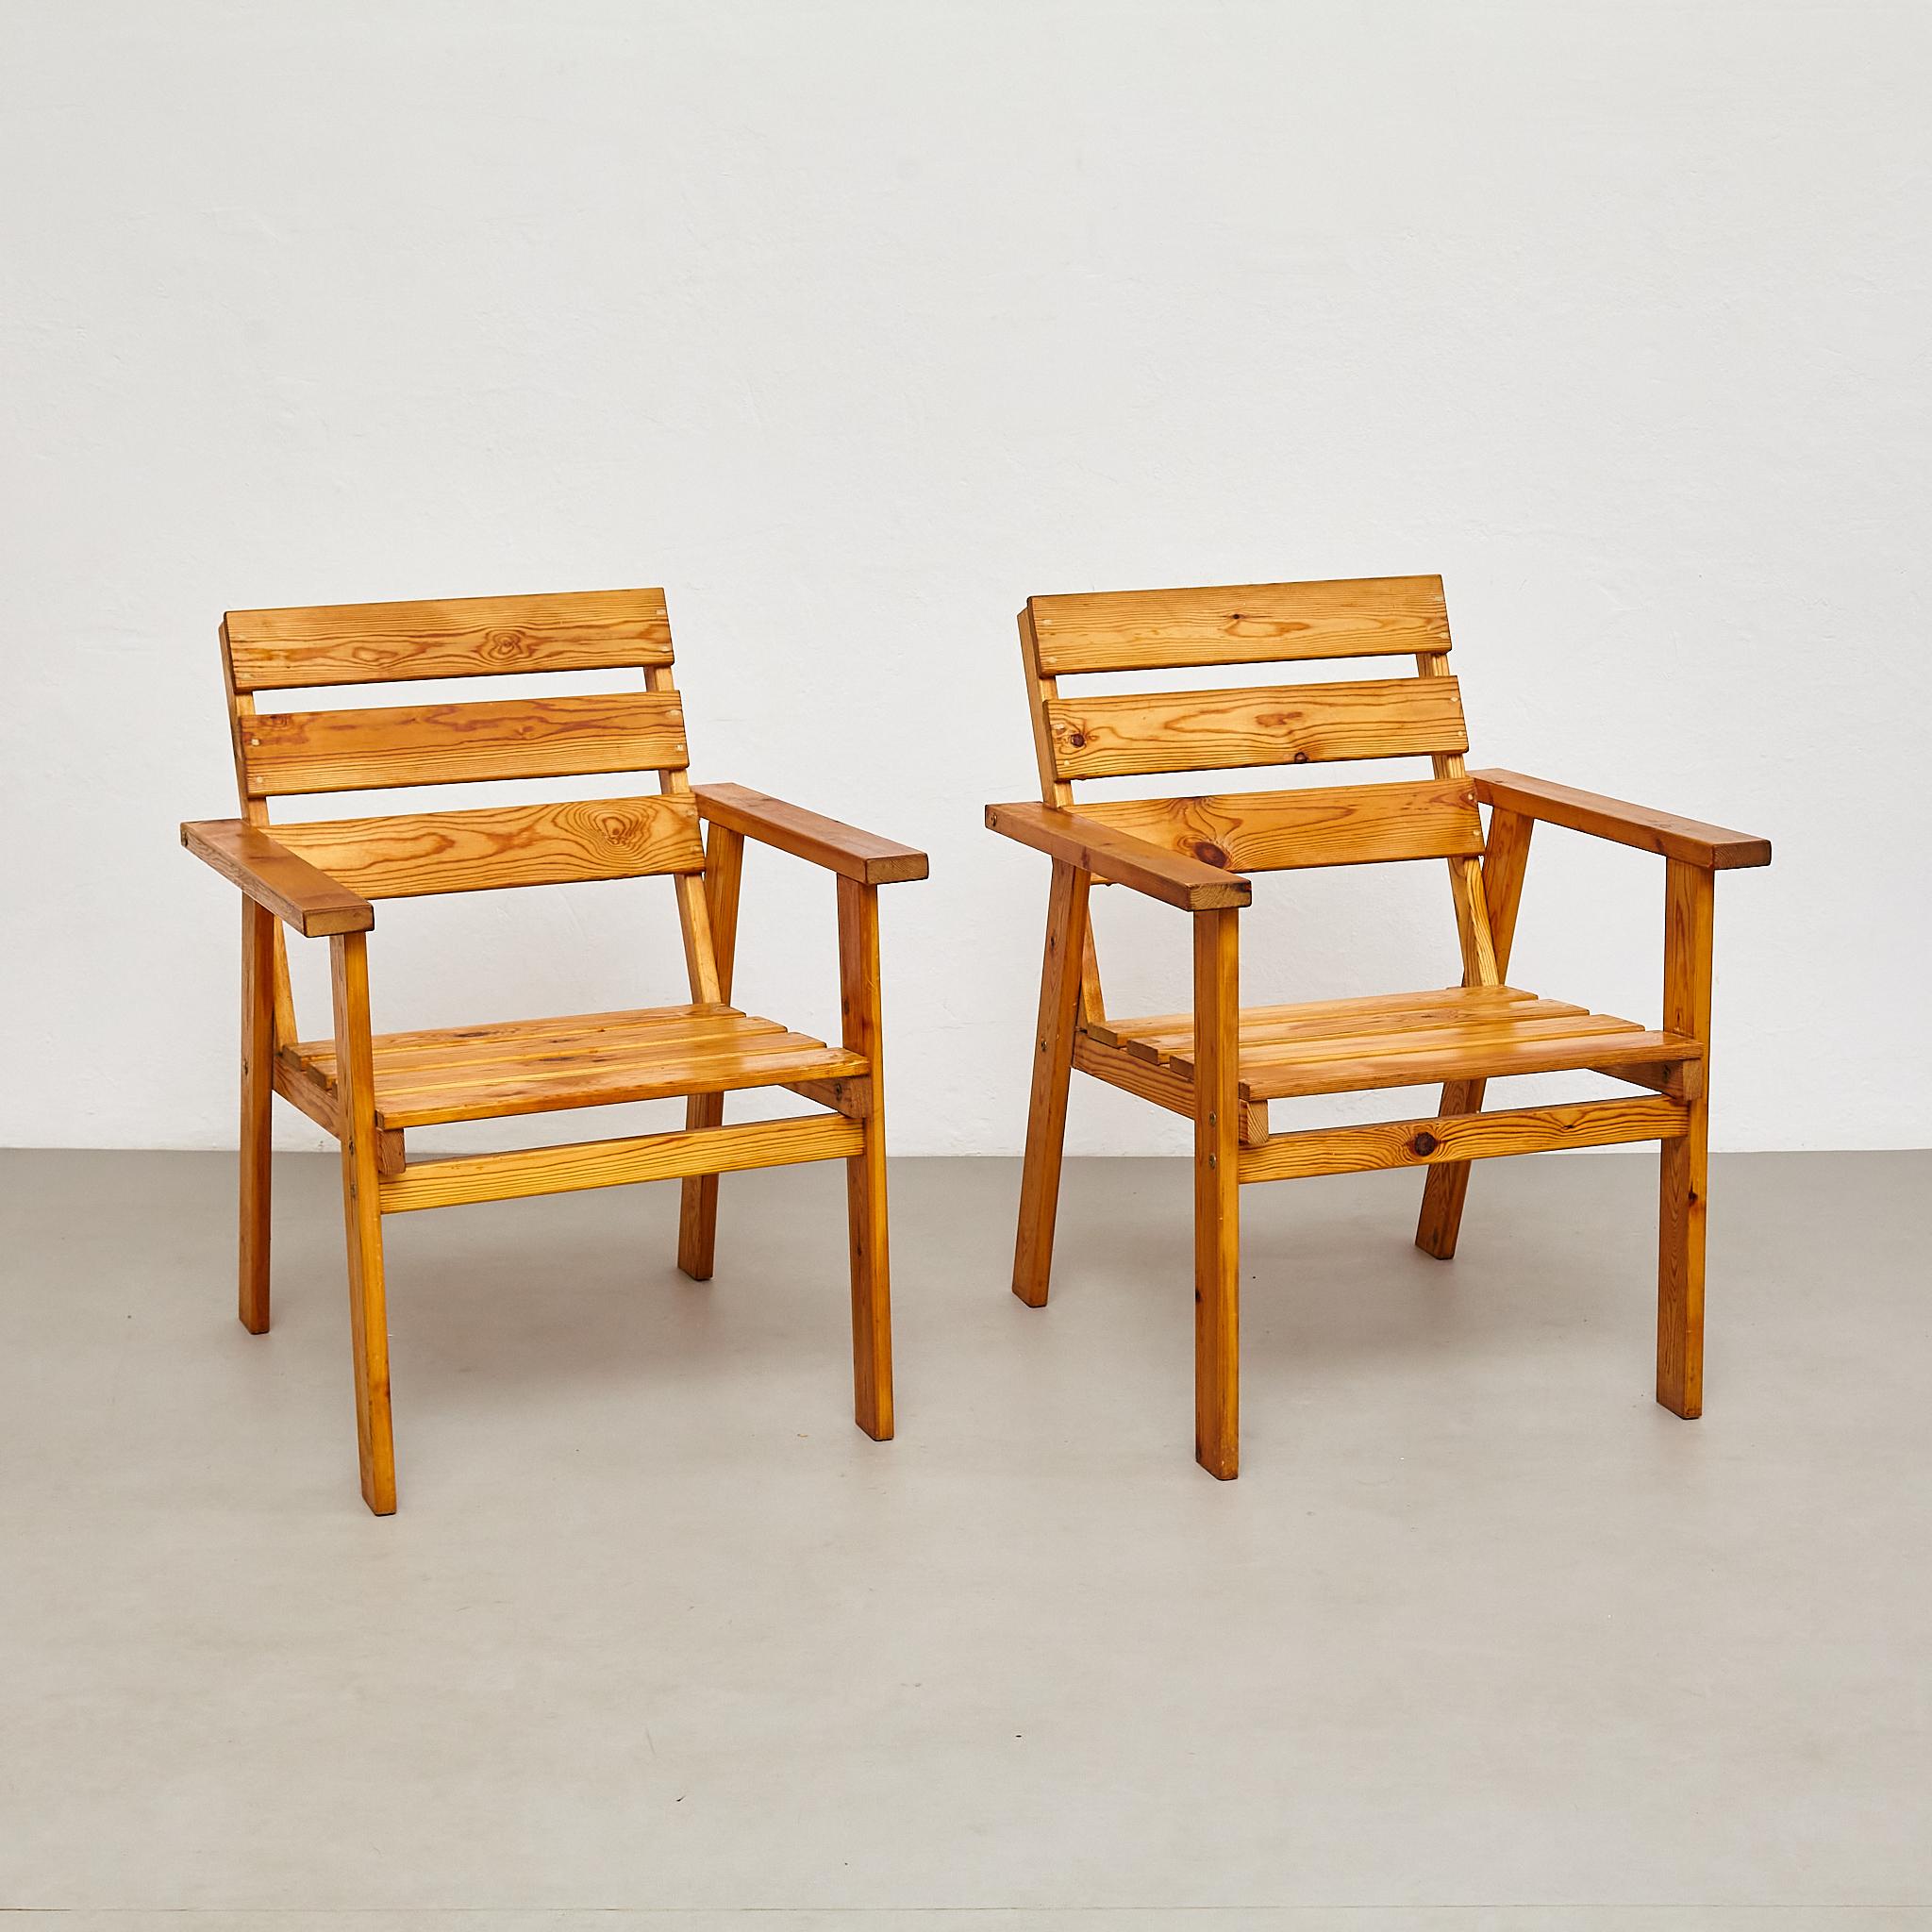 Entdecken Sie die zeitlose Anziehungskraft dieser Sessel aus der Mitte des Jahrhunderts, die die in den 1960er Jahren entstandenen rationellen und minimalistischen Designprinzipien widerspiegeln. Dieses exquisite Set aus zwei Sesseln, das in